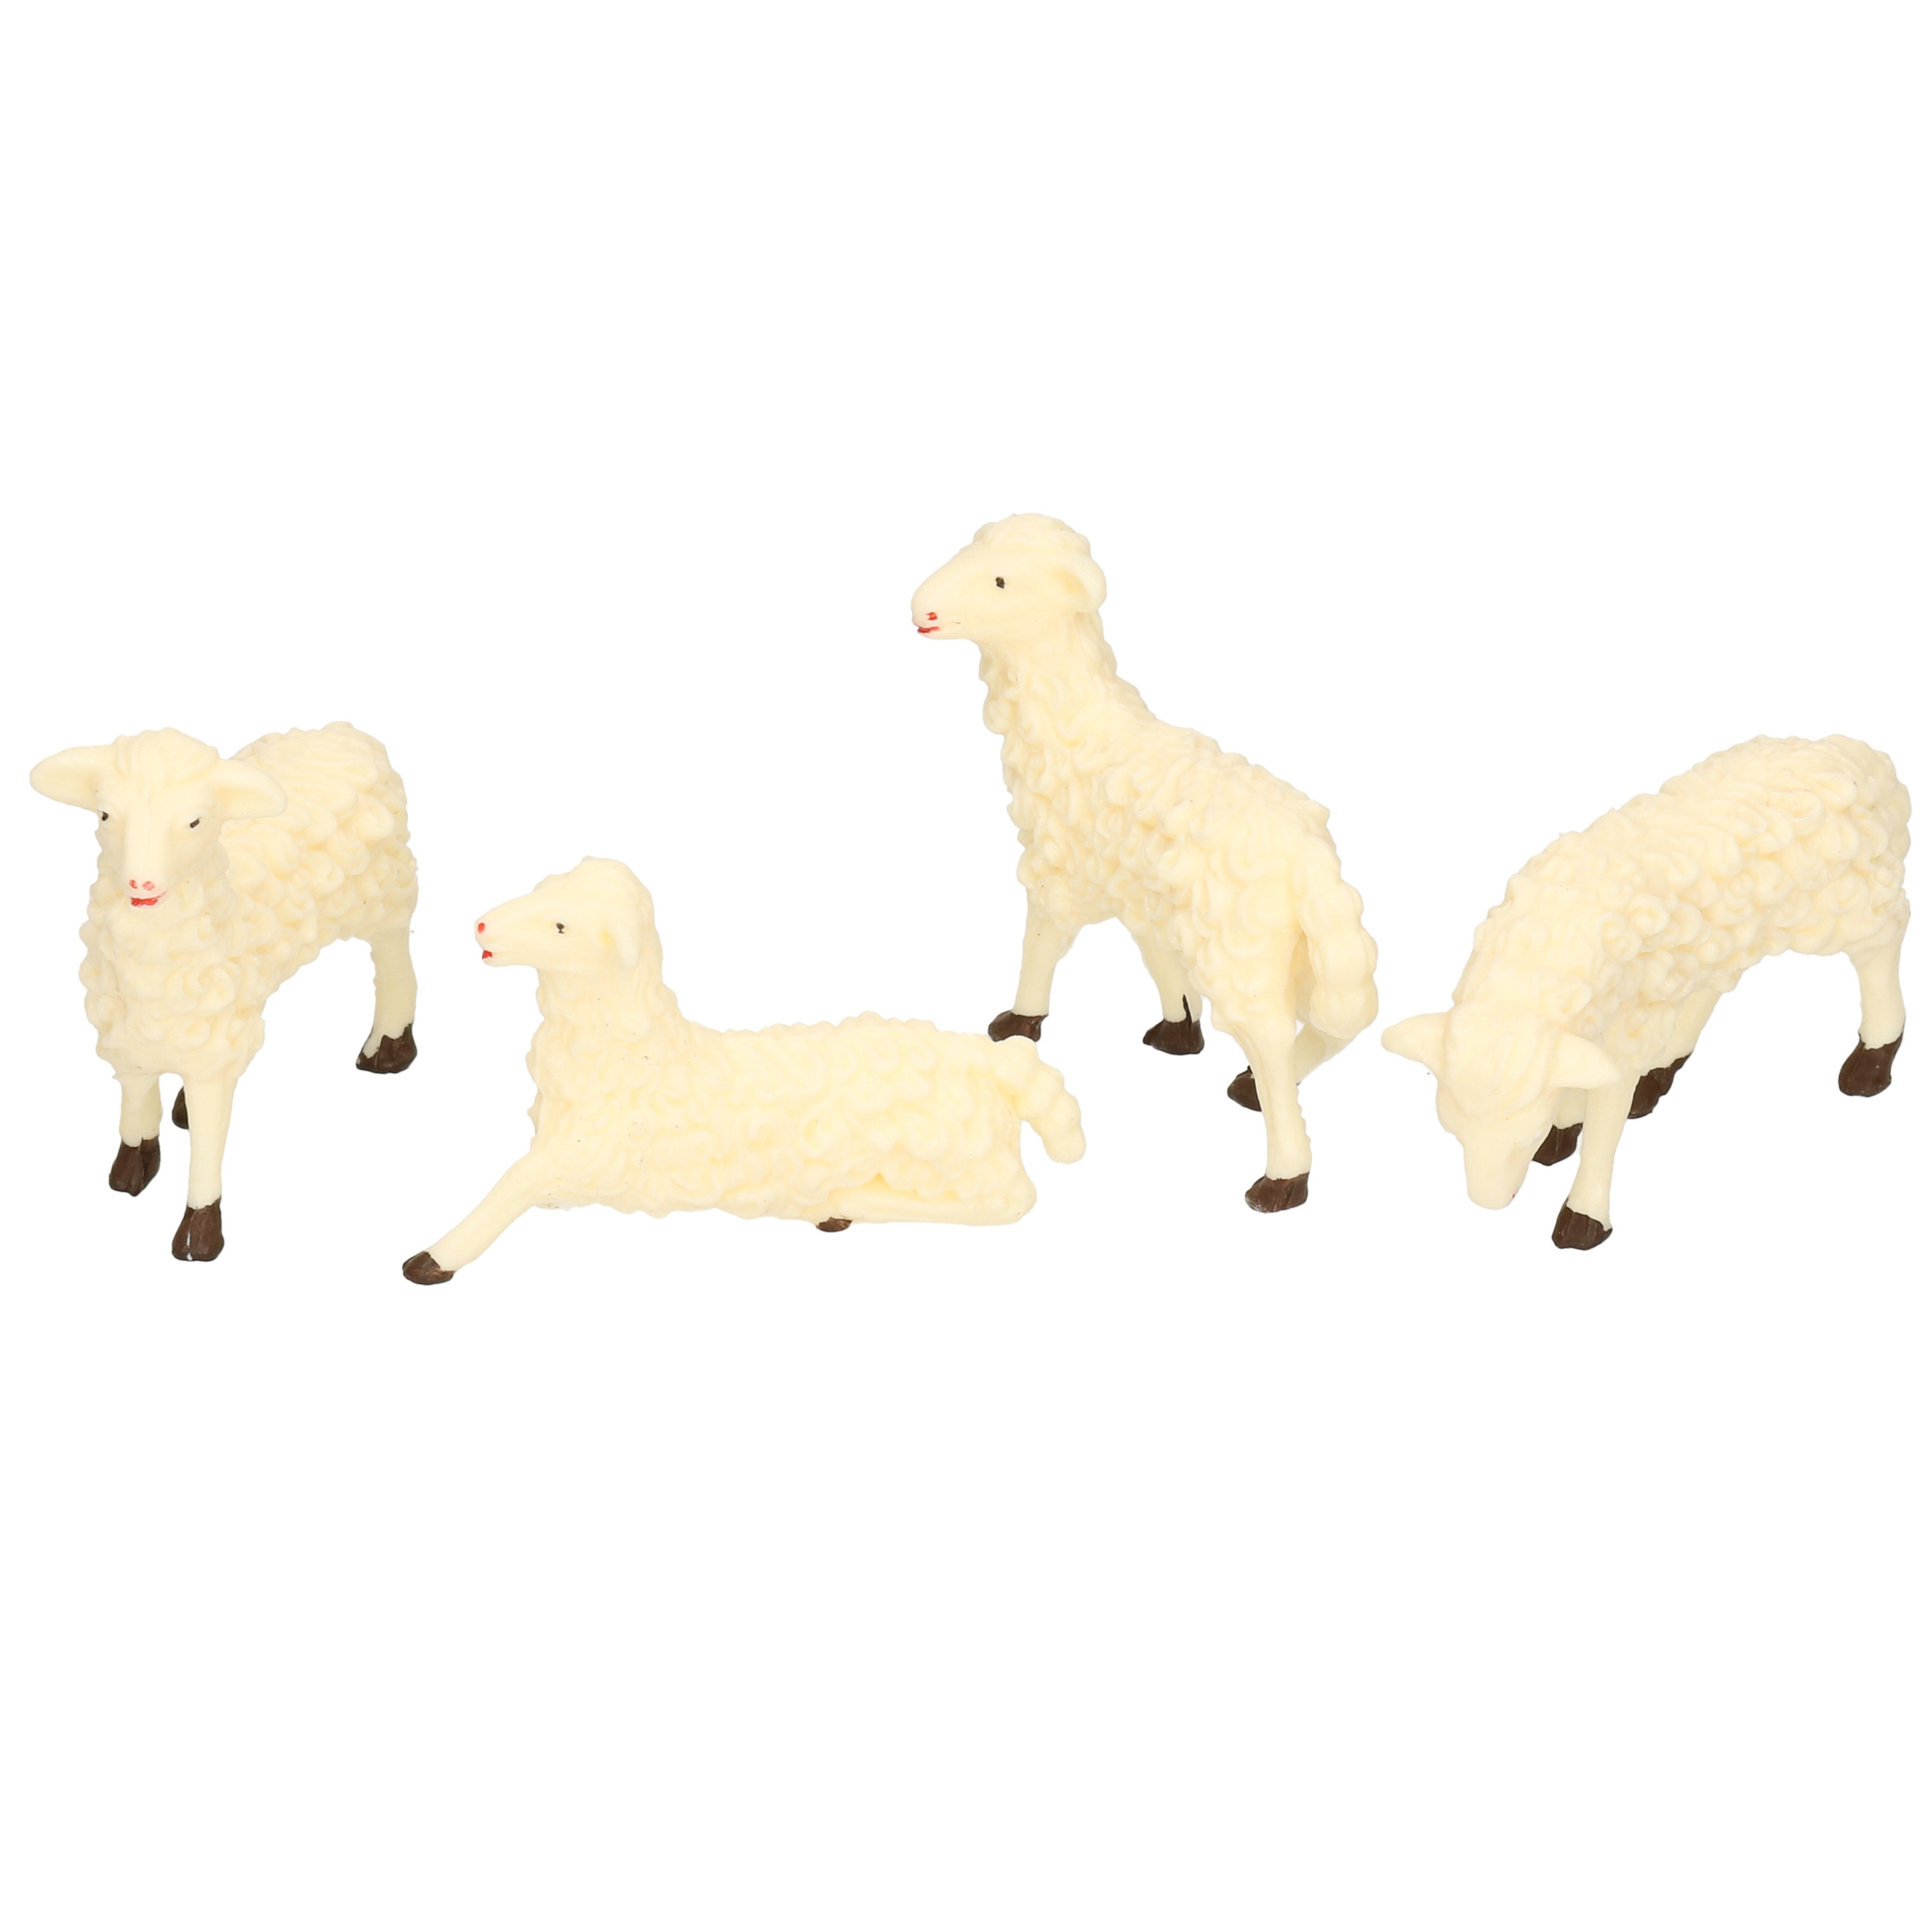 Afbeelding 4x Witte schapen miniatuur beeldjes 7 x 6 cm dierenbeeldjes door Animals Giftshop